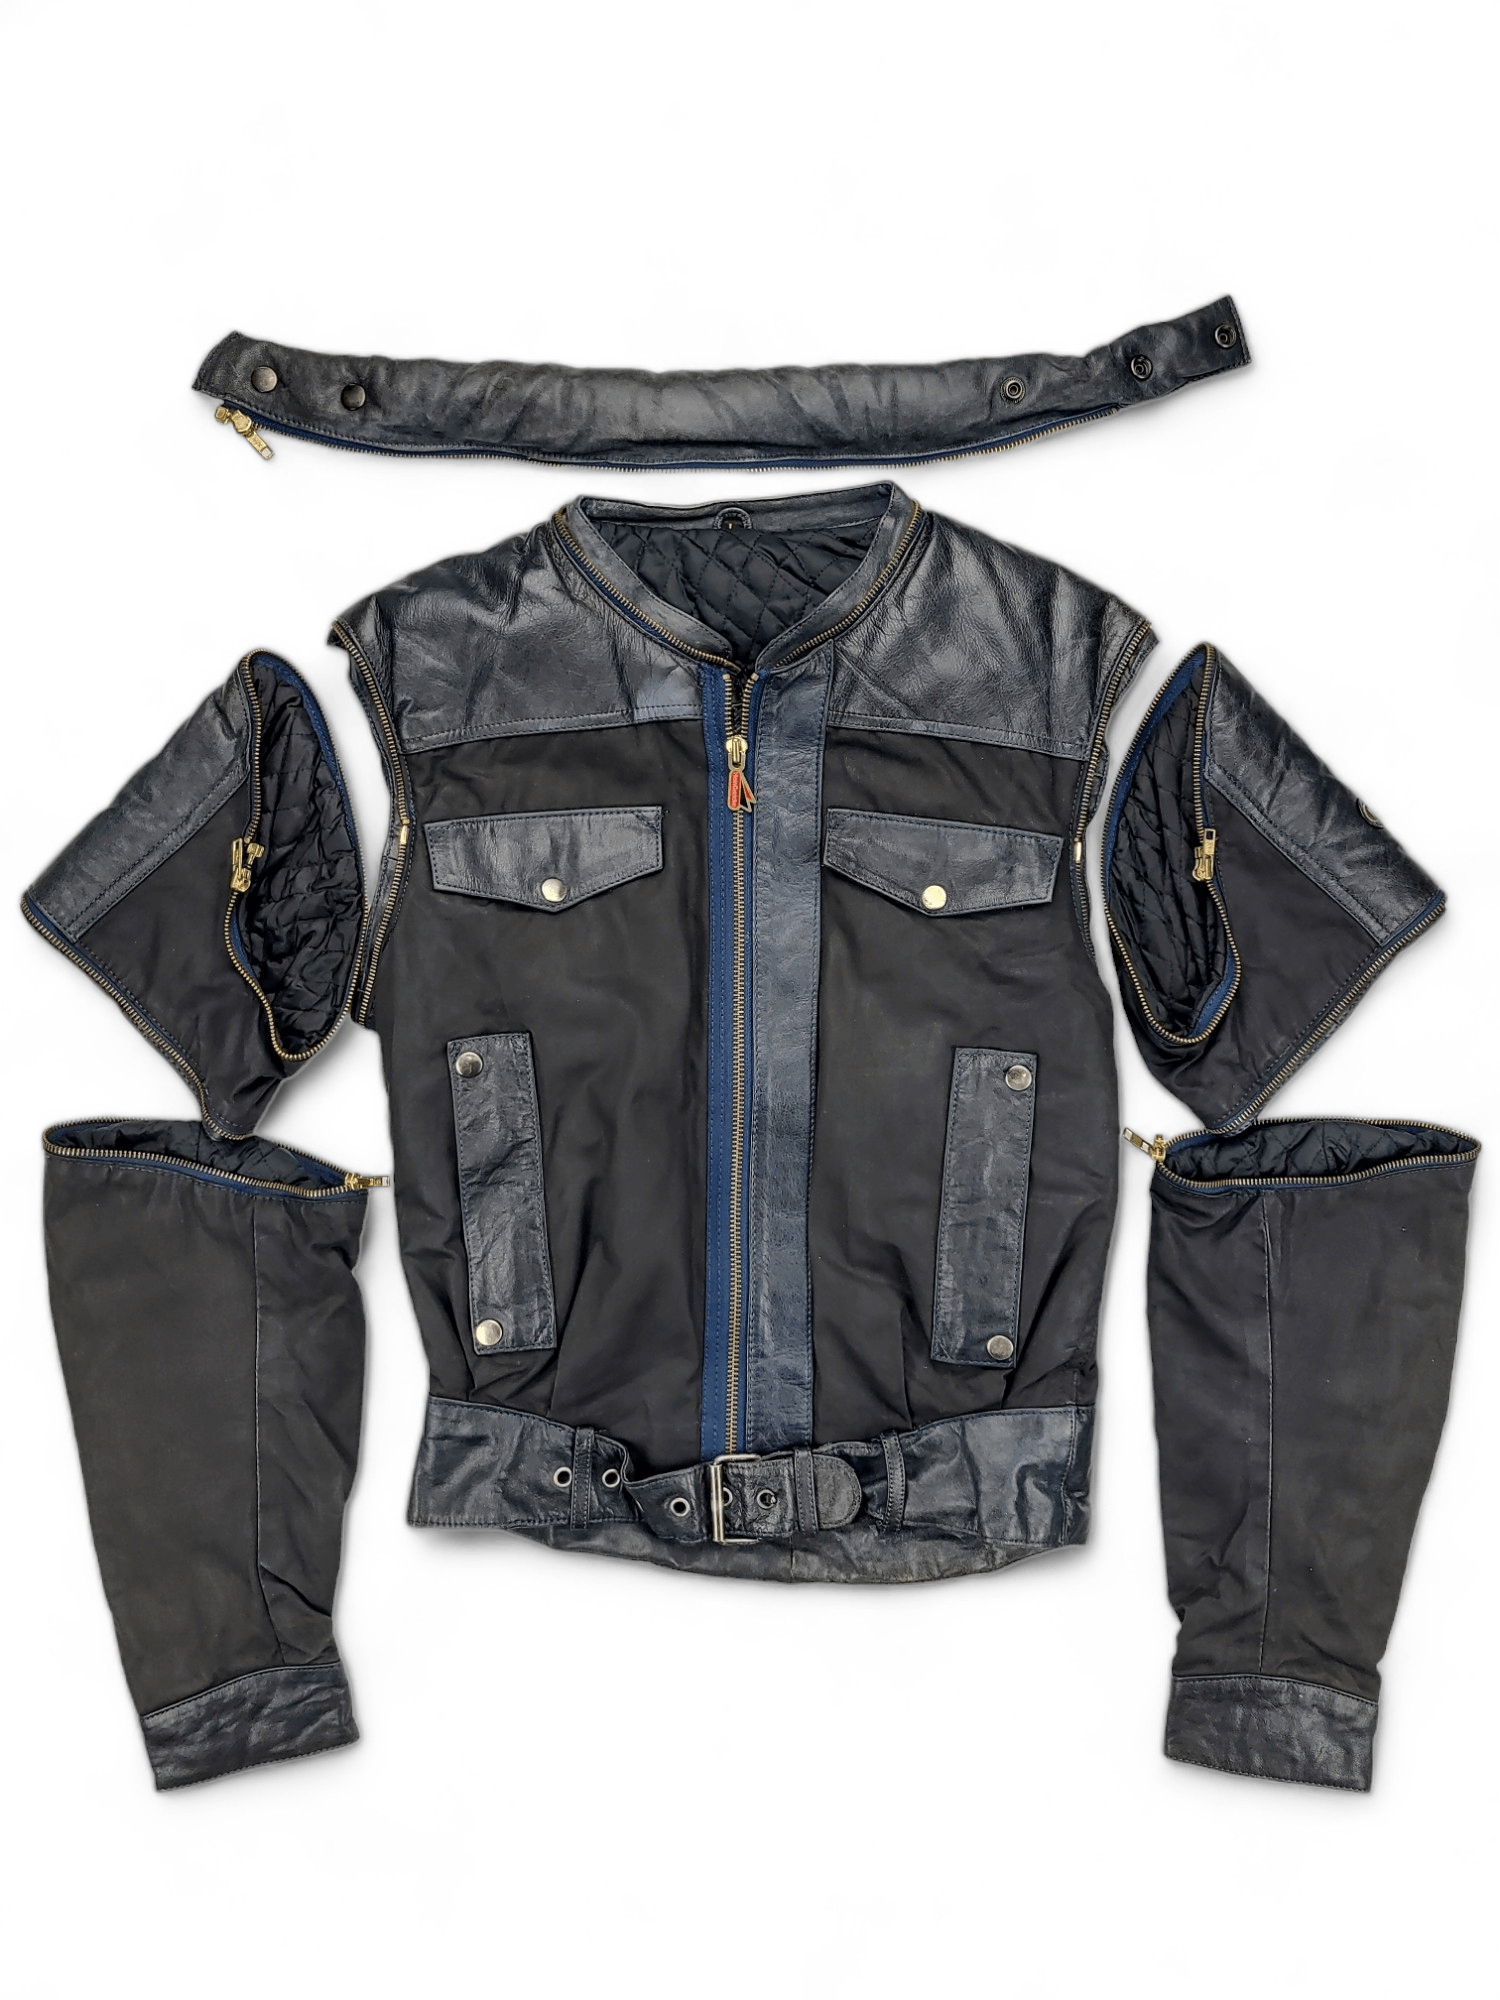 Hein Gericke 80s Hein Gericke Detachable Leather & Cotton Jacket | Grailed